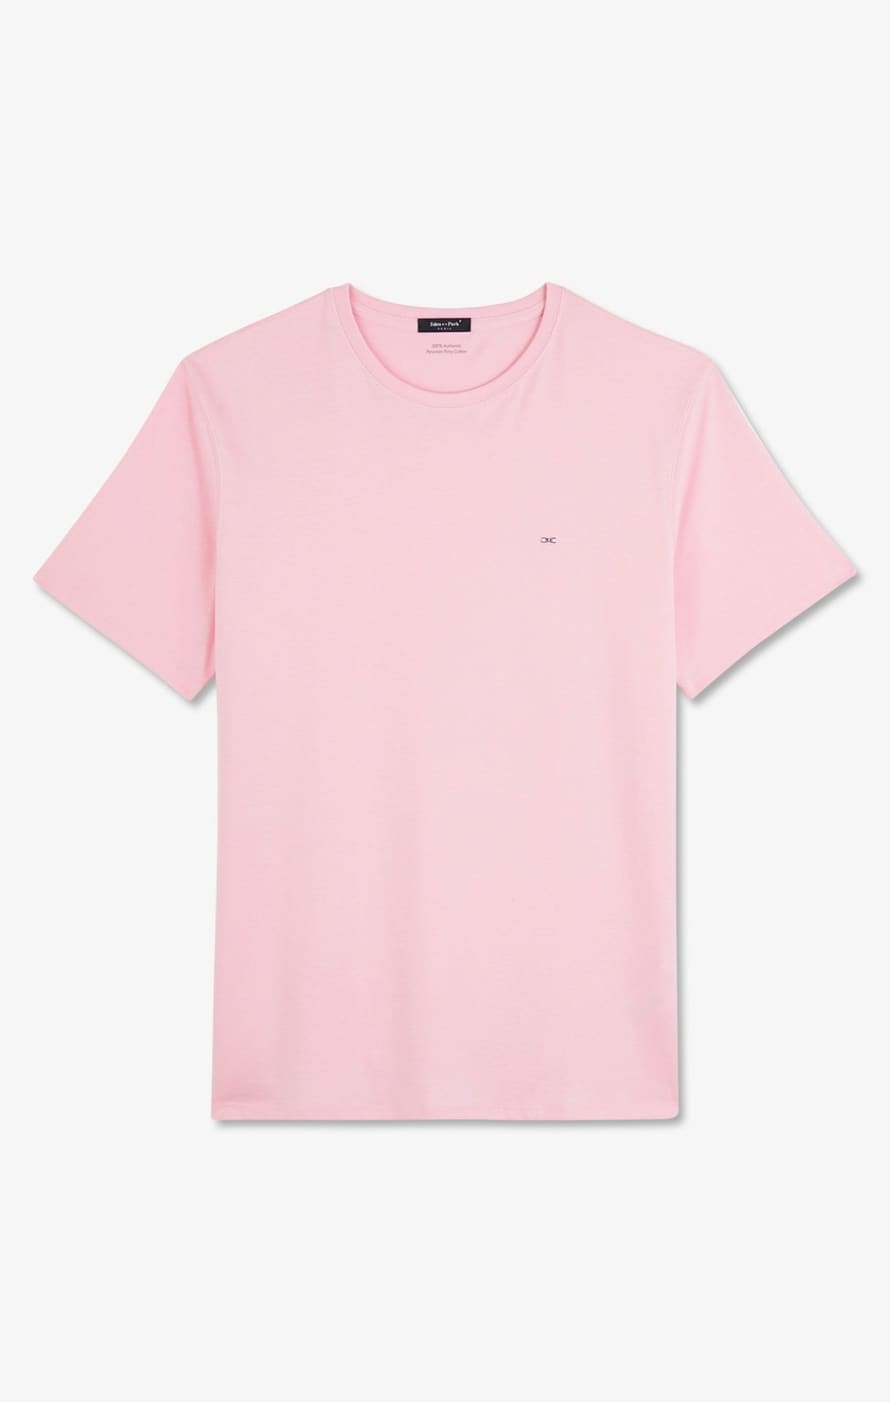 Eden Park Pink Cotton Pima T Shirt